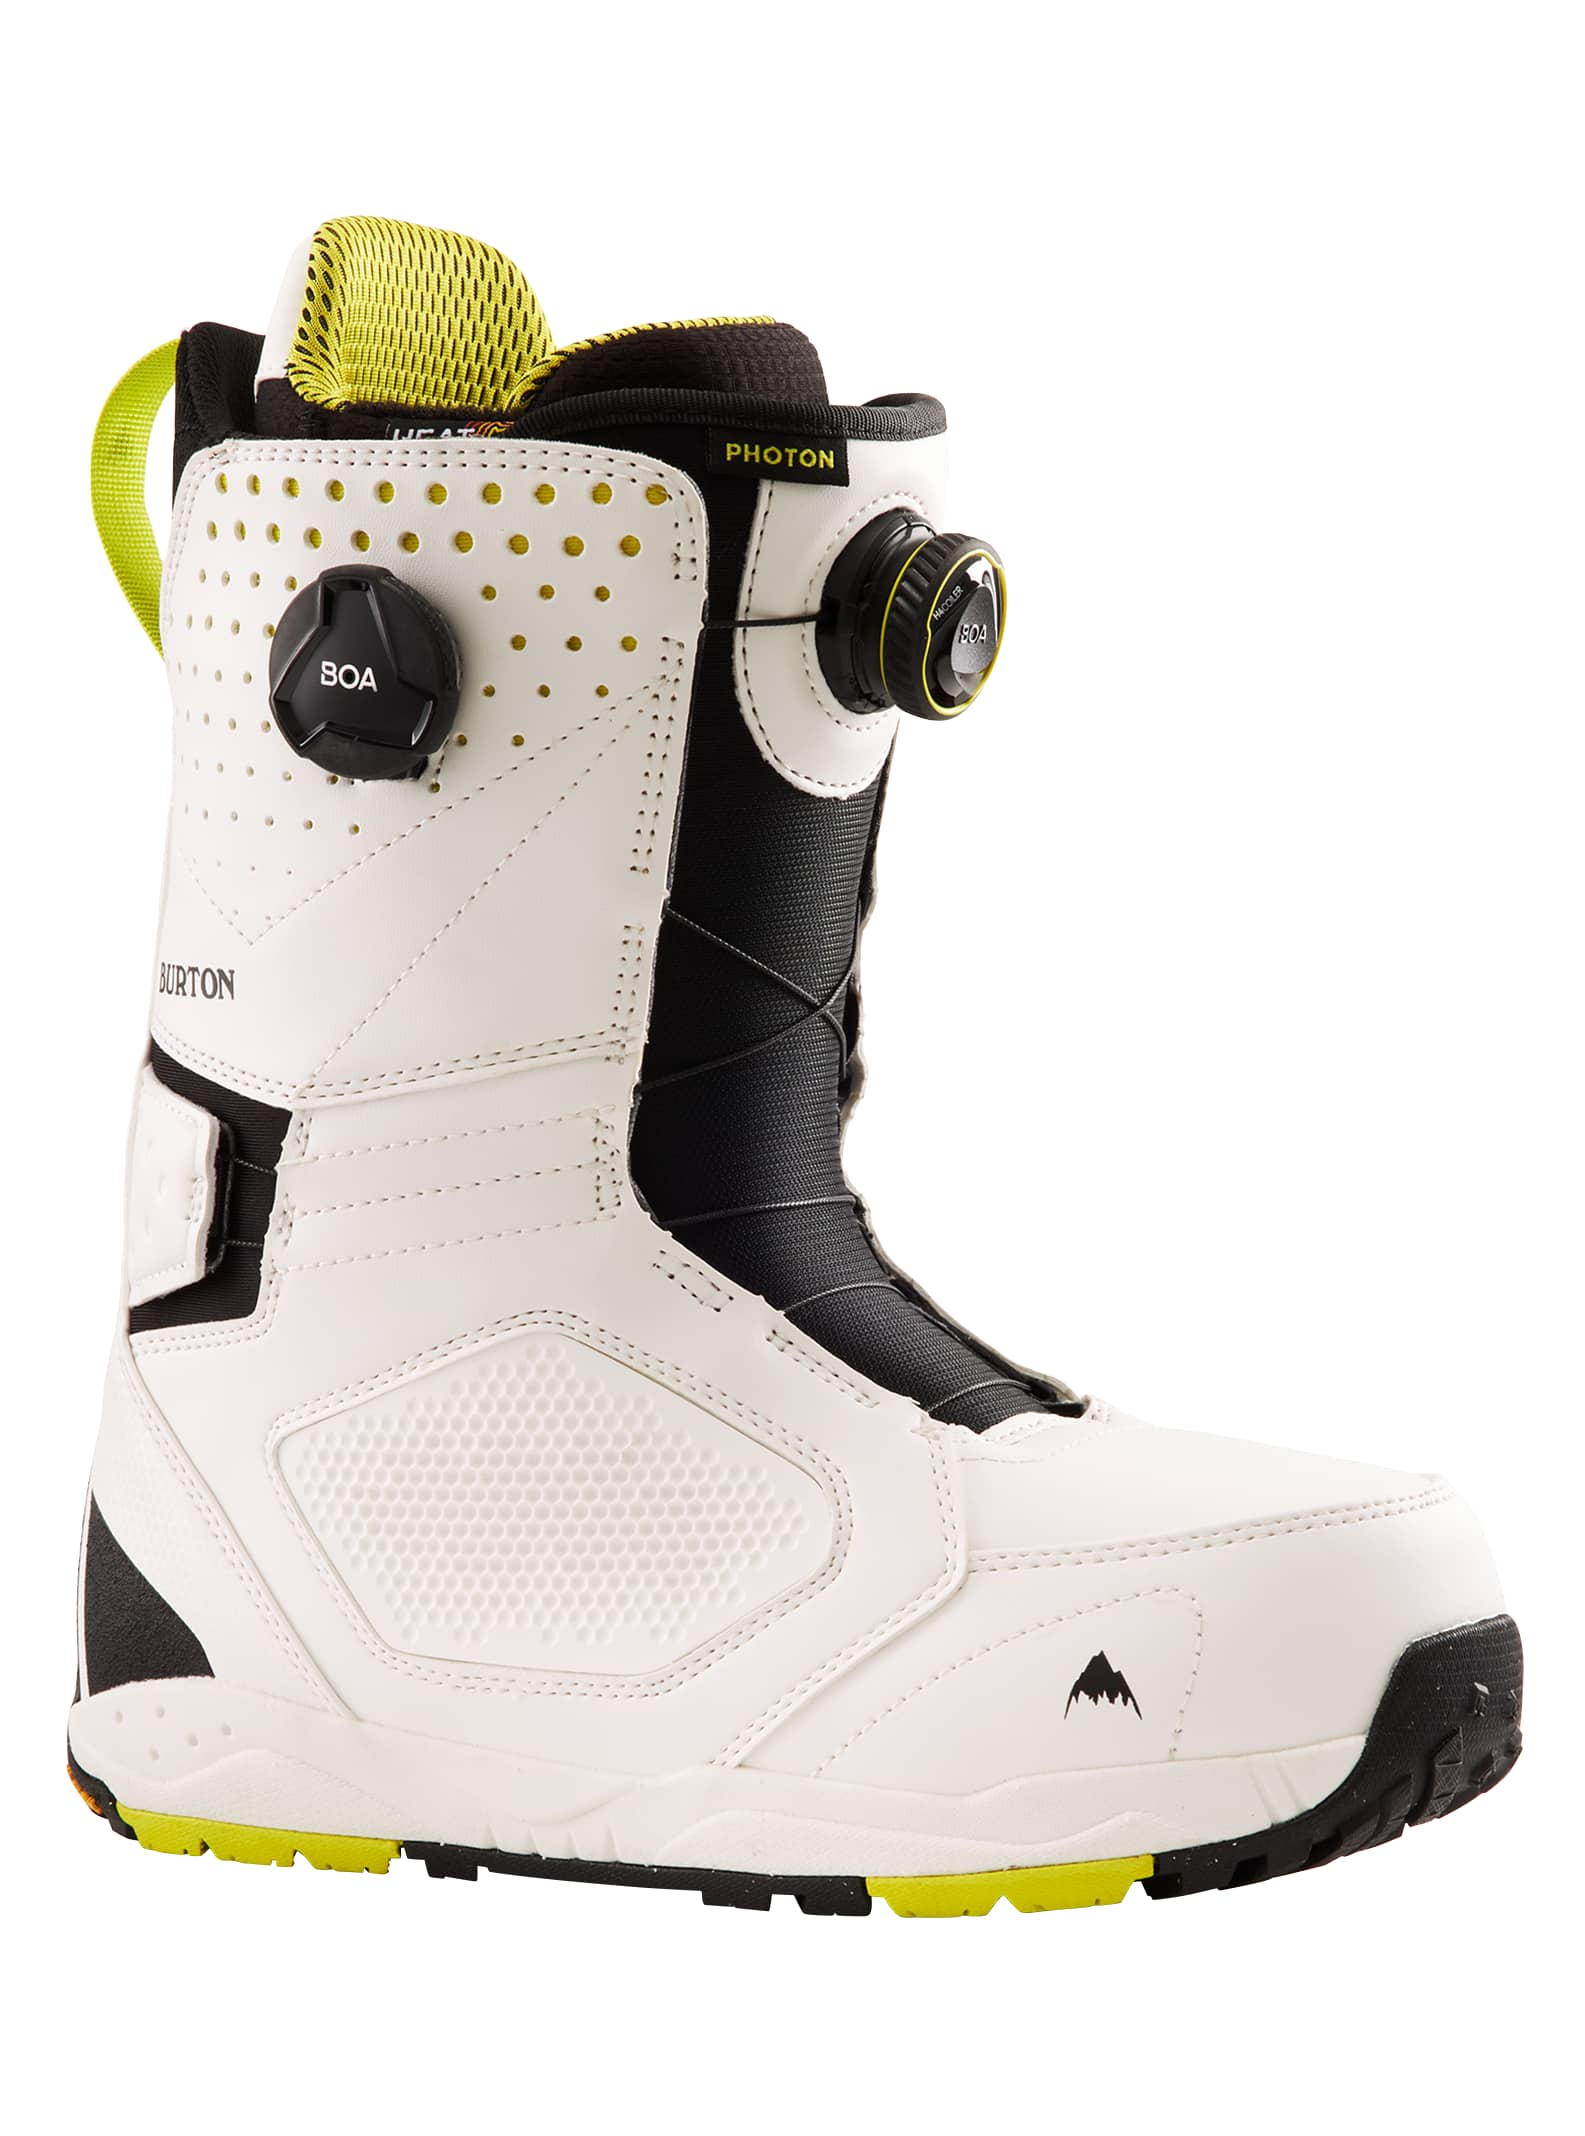 claro Ennegrecer Presentar Men's Burton Photon BOA® Snowboard Boots | Burton.com Winter 2022 US